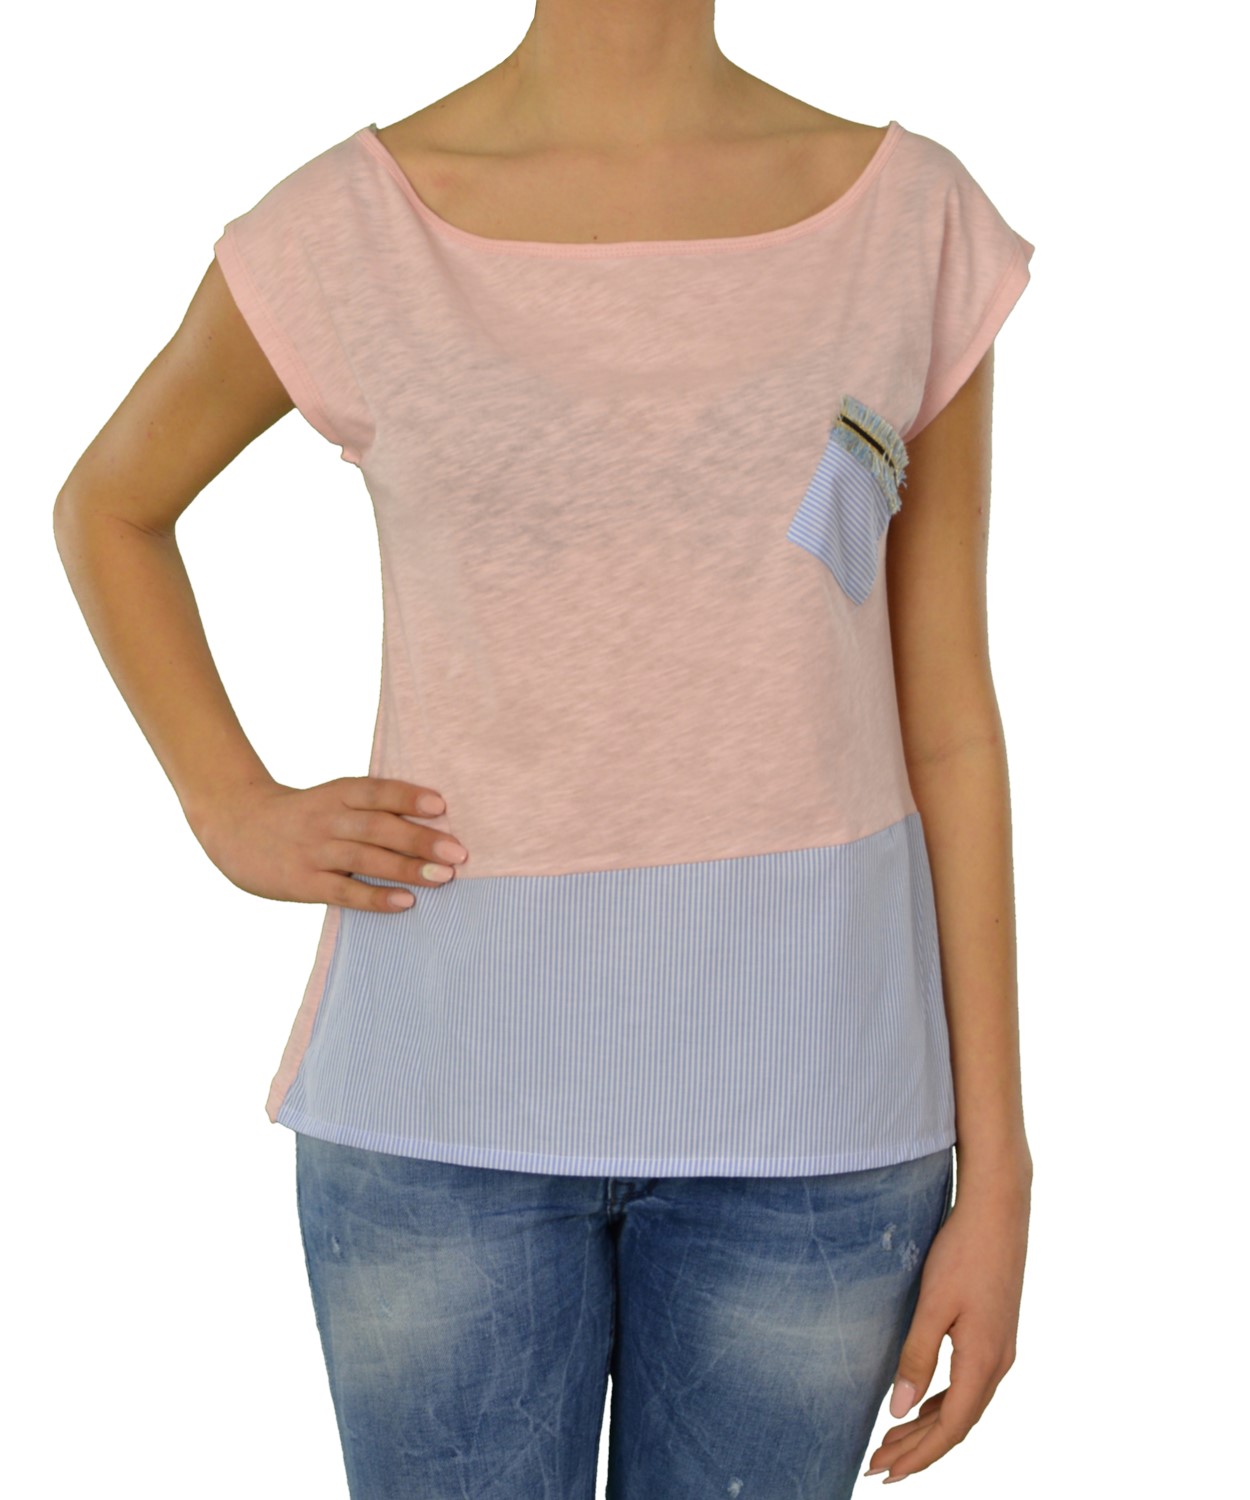 Γυναικείο t-shirt Lipsy ροζ αμάνικο 1170033Q